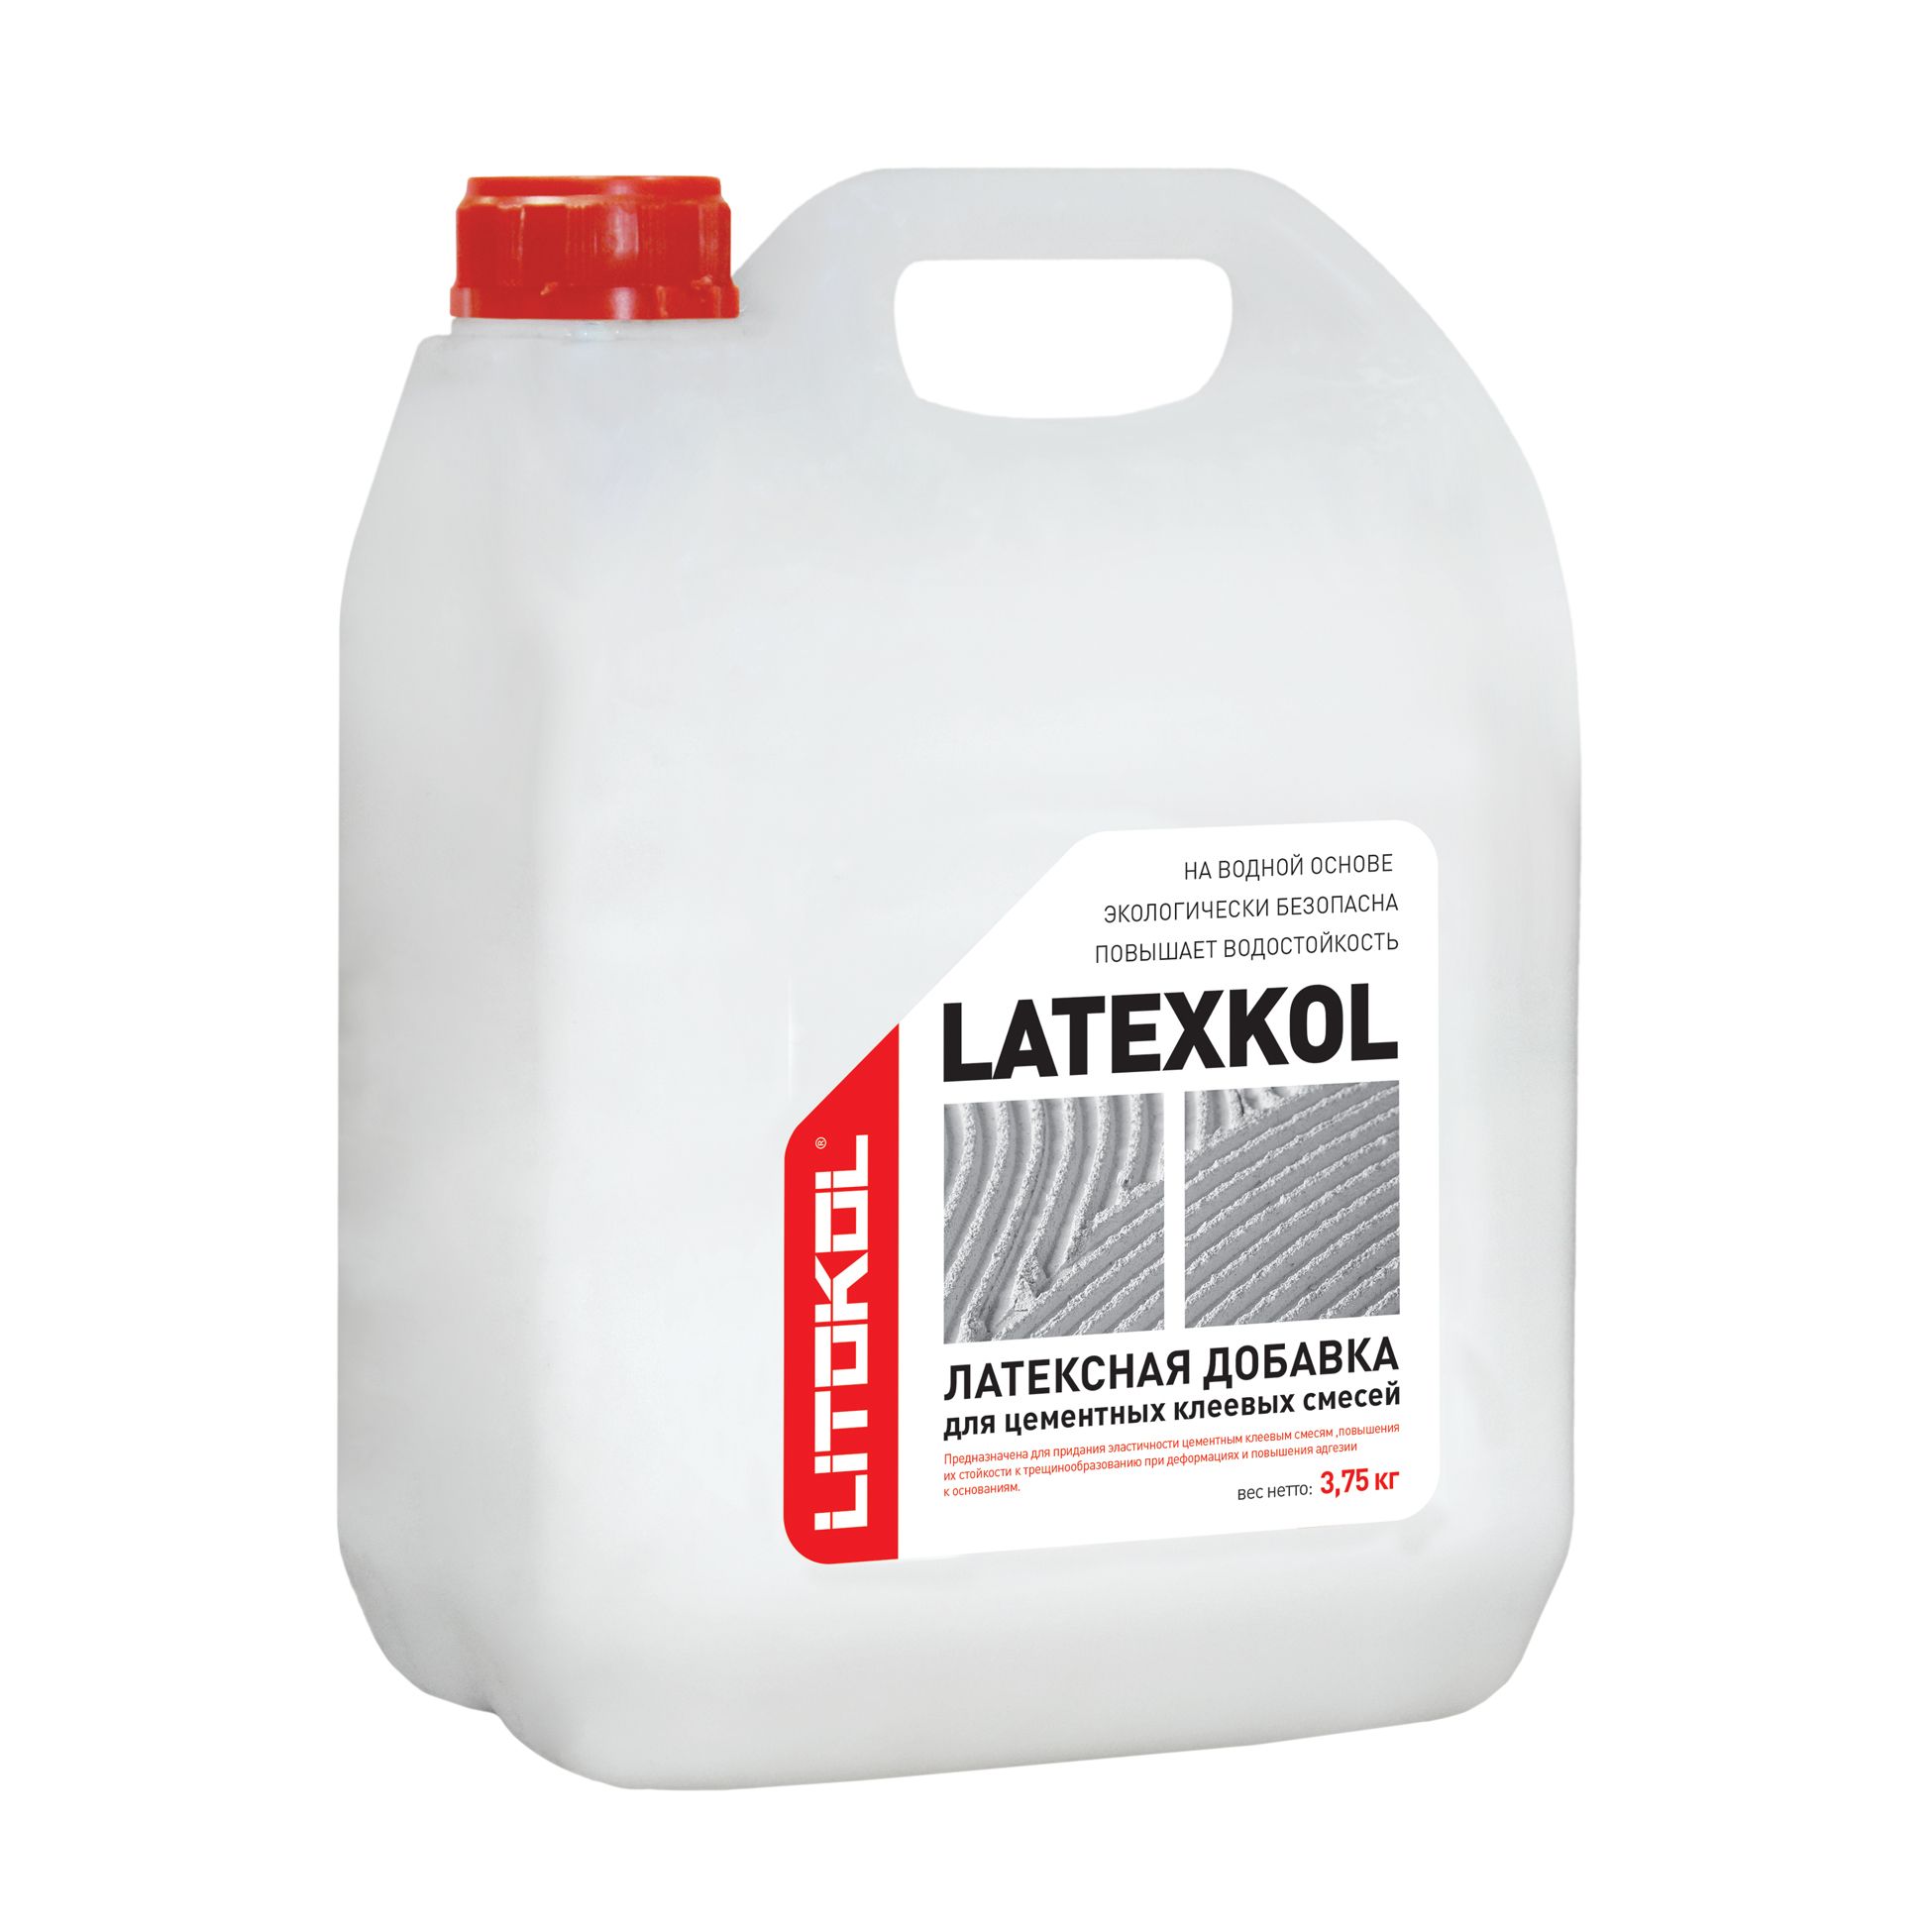 Купить клей литокол. Добавка латексная Litokol LATEXKOL-M 3.75 кг. Клей Litokol k55 LATEXKOL М. Латексная добавка для клея Литокол\. Добавка Литокол латексная для клея 3,75 кг.